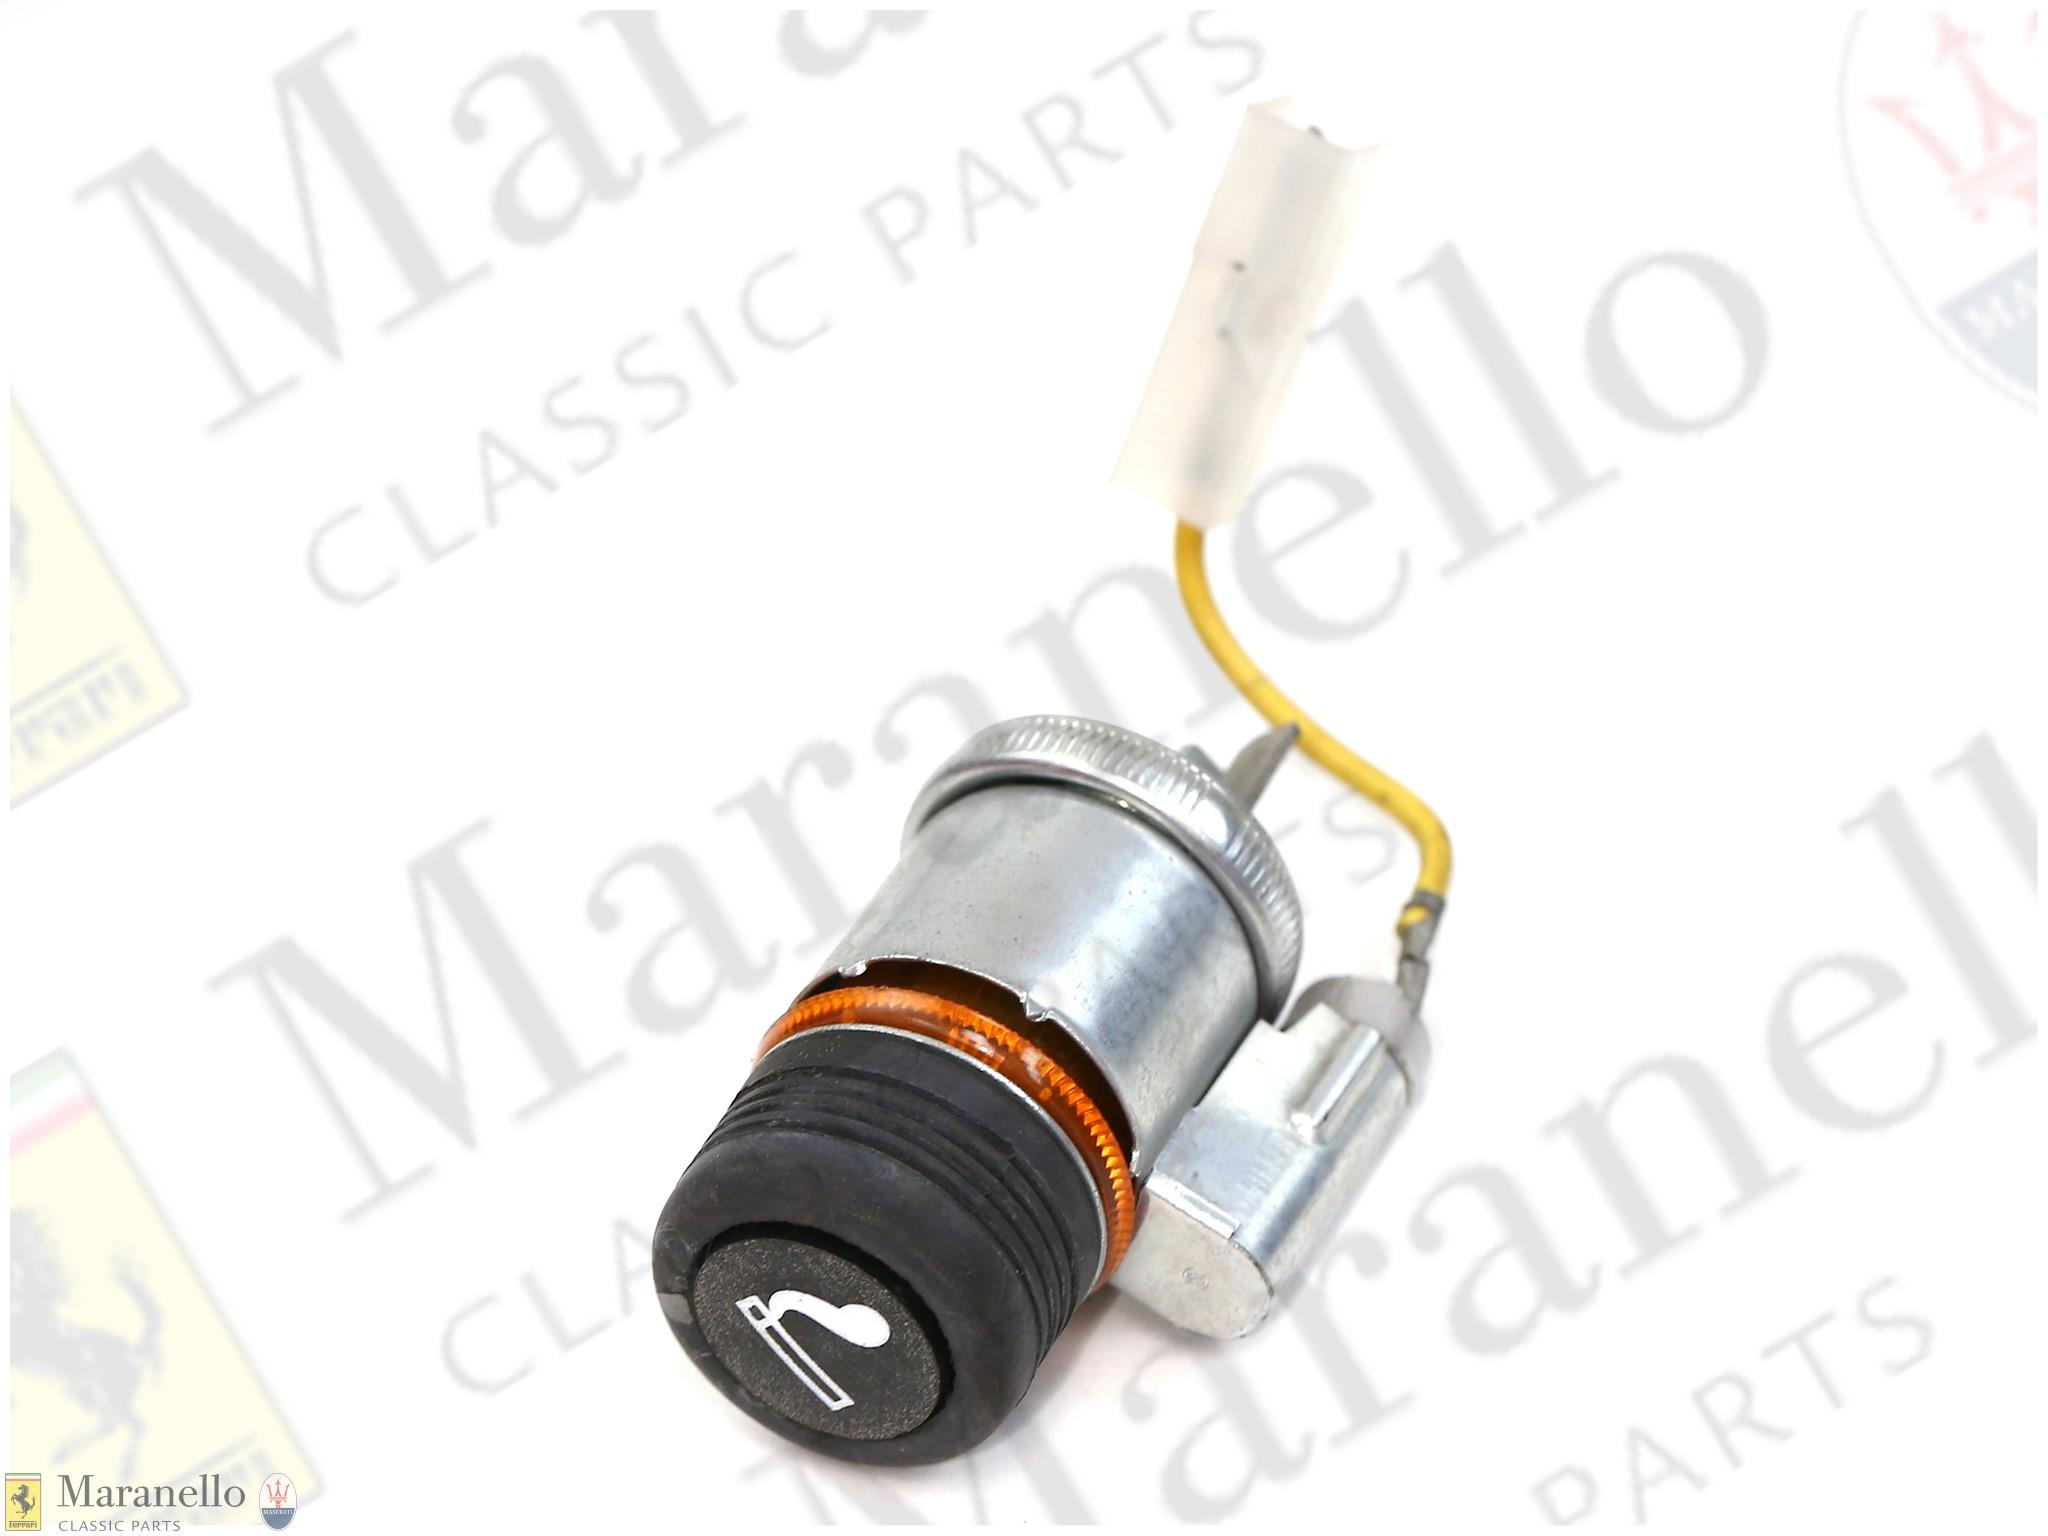 Ferrari Part 257 80 670 00 Cigarette Lighter Maranello Classic Parts